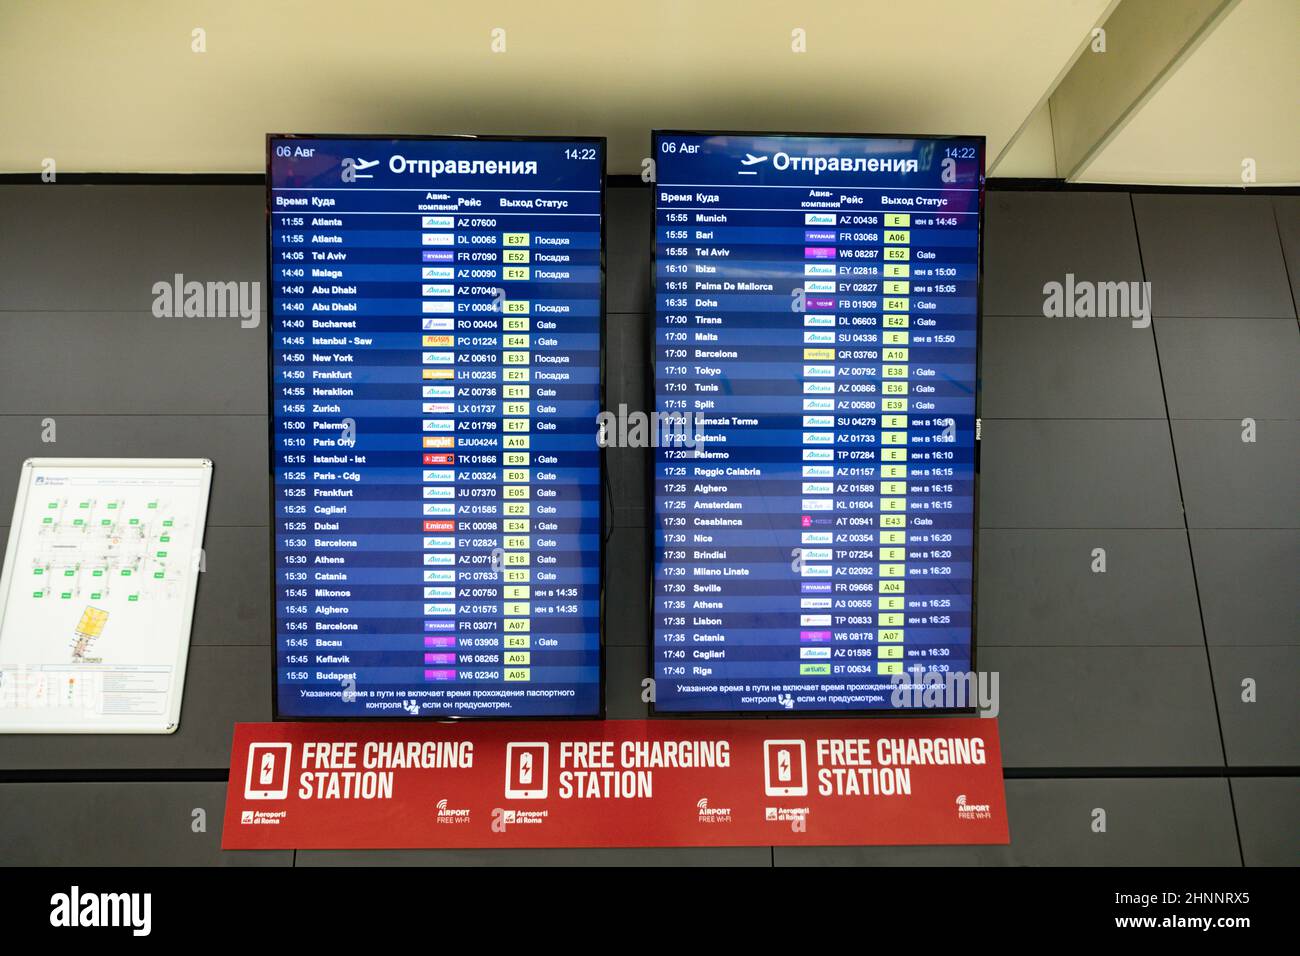 Horaire d'arrivée et de départ à un panneau de signalisation de l'aéroport romain Fiumicino en partie en langue russe Banque D'Images